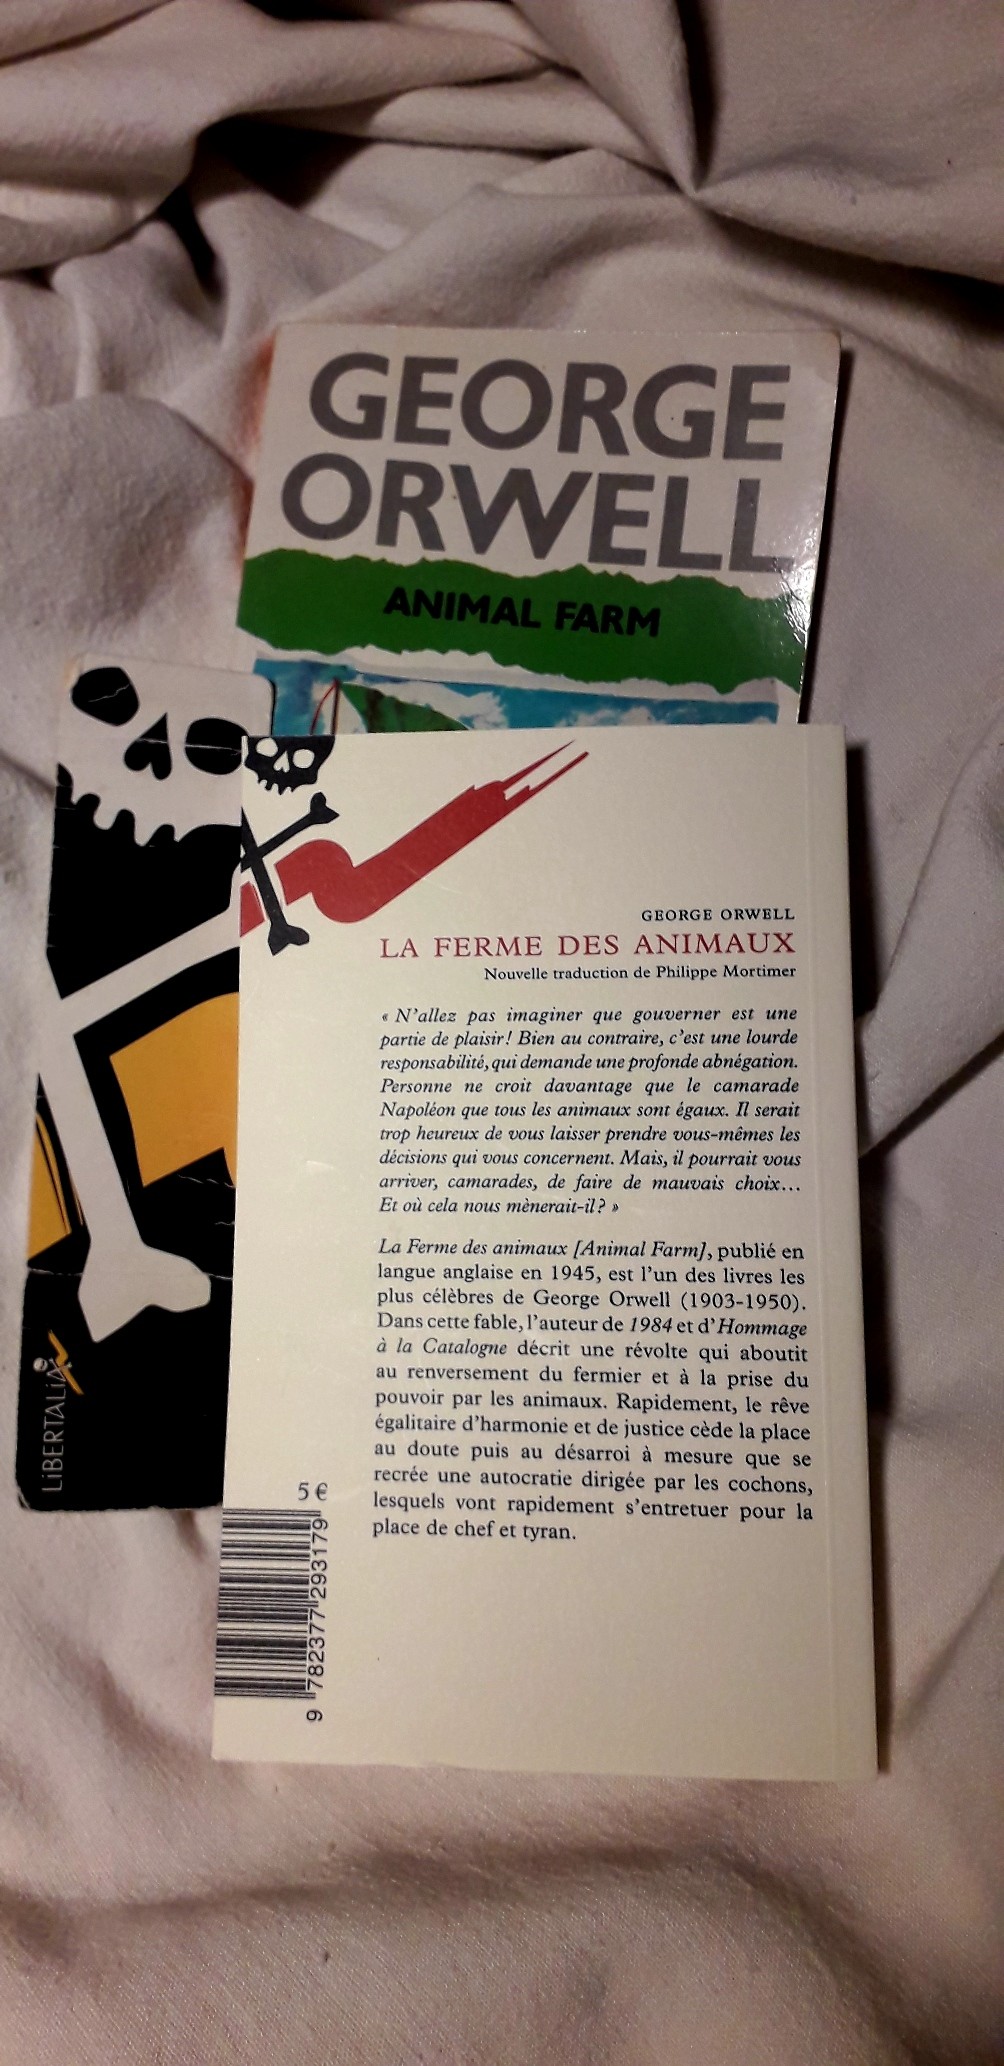 4ème de couverture du livre de George Orwell, " La ferme des animaux", publié aux éditions Libertalia.